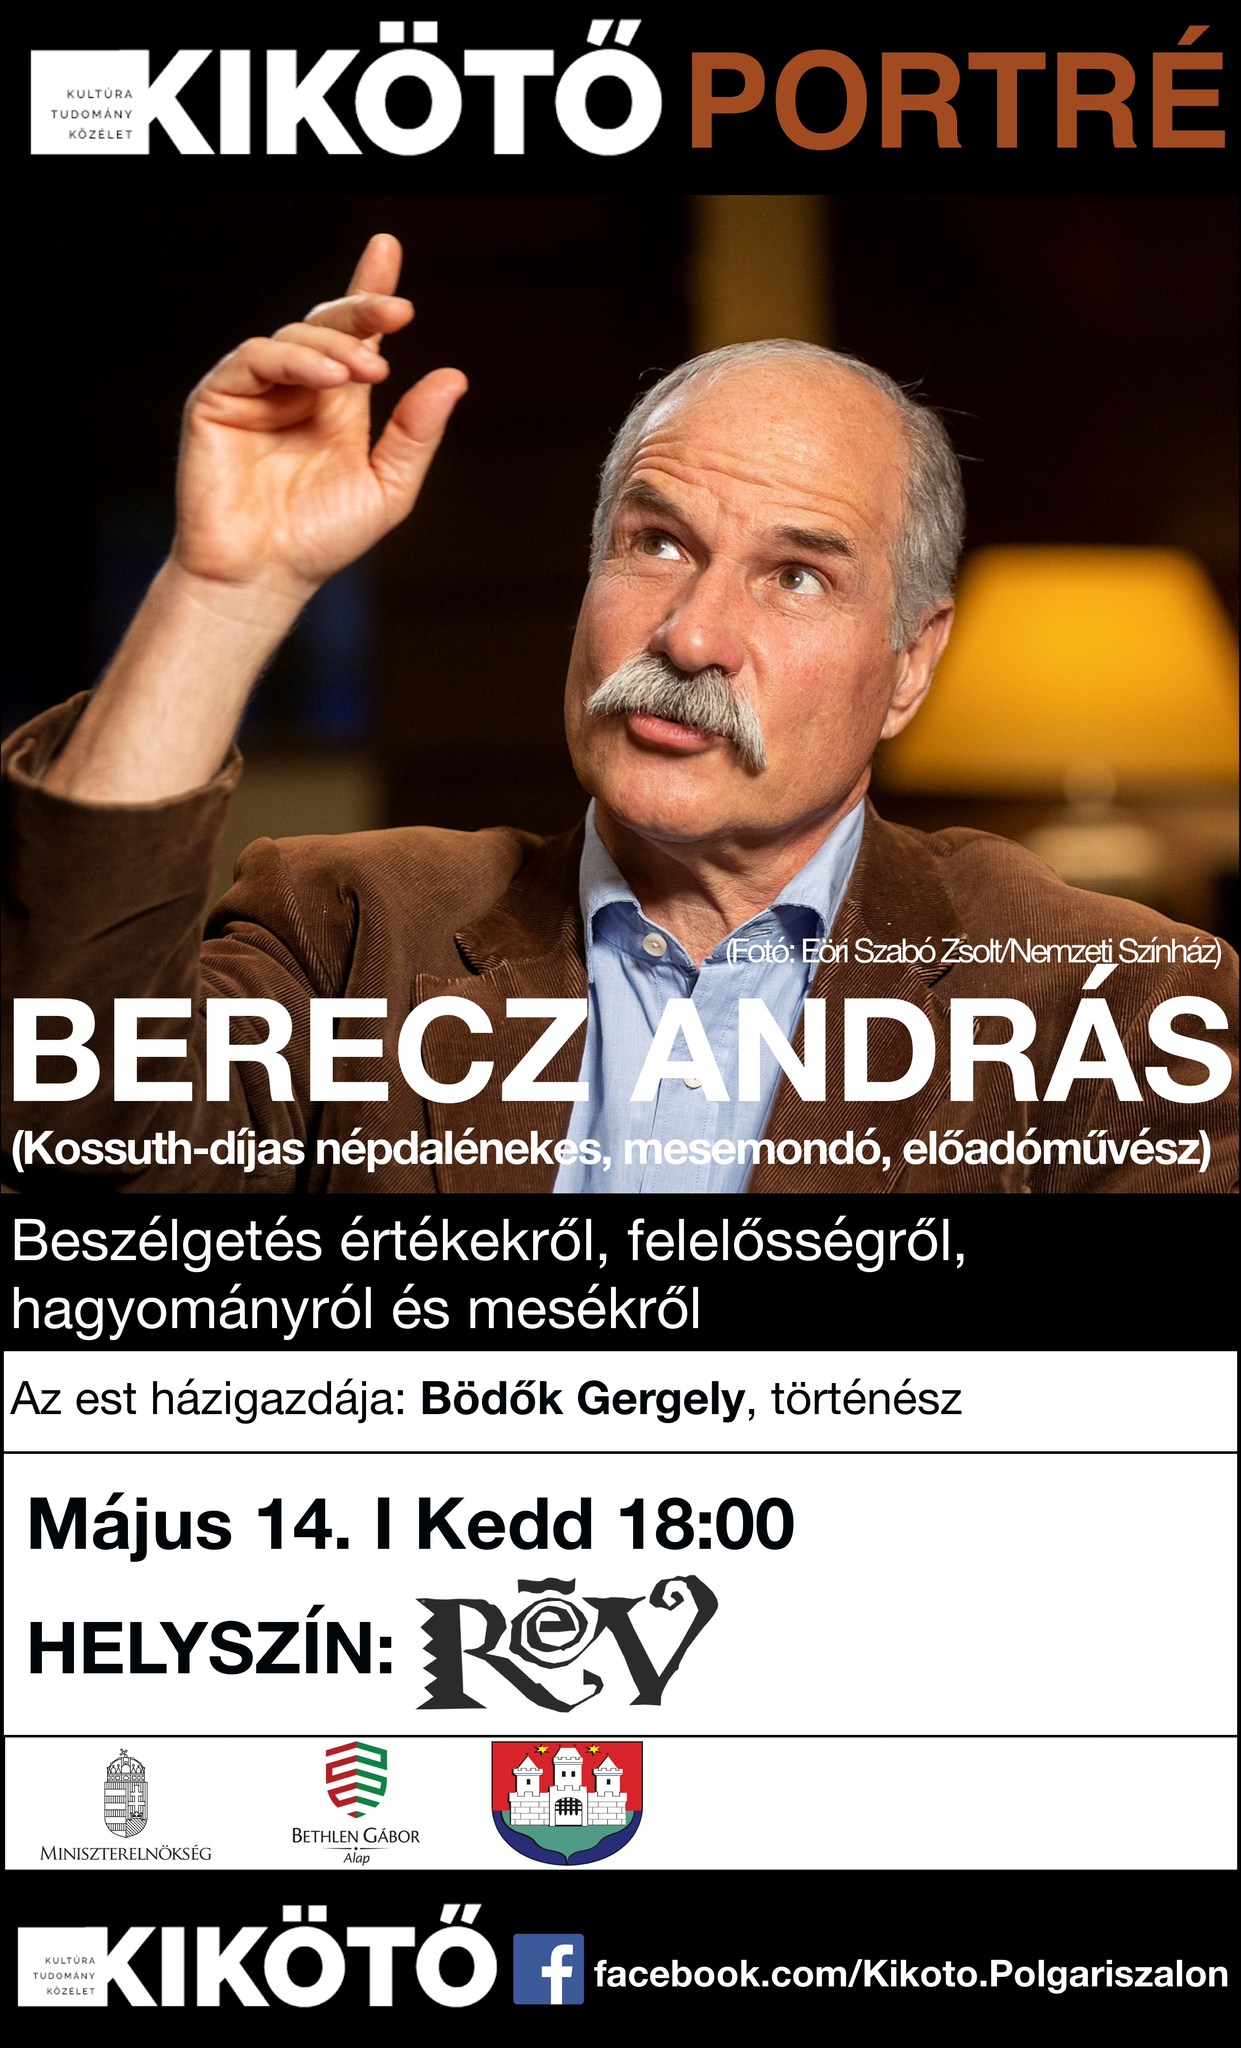 Kikötő portré-beszélgetés Berecz Andrással 05.14.